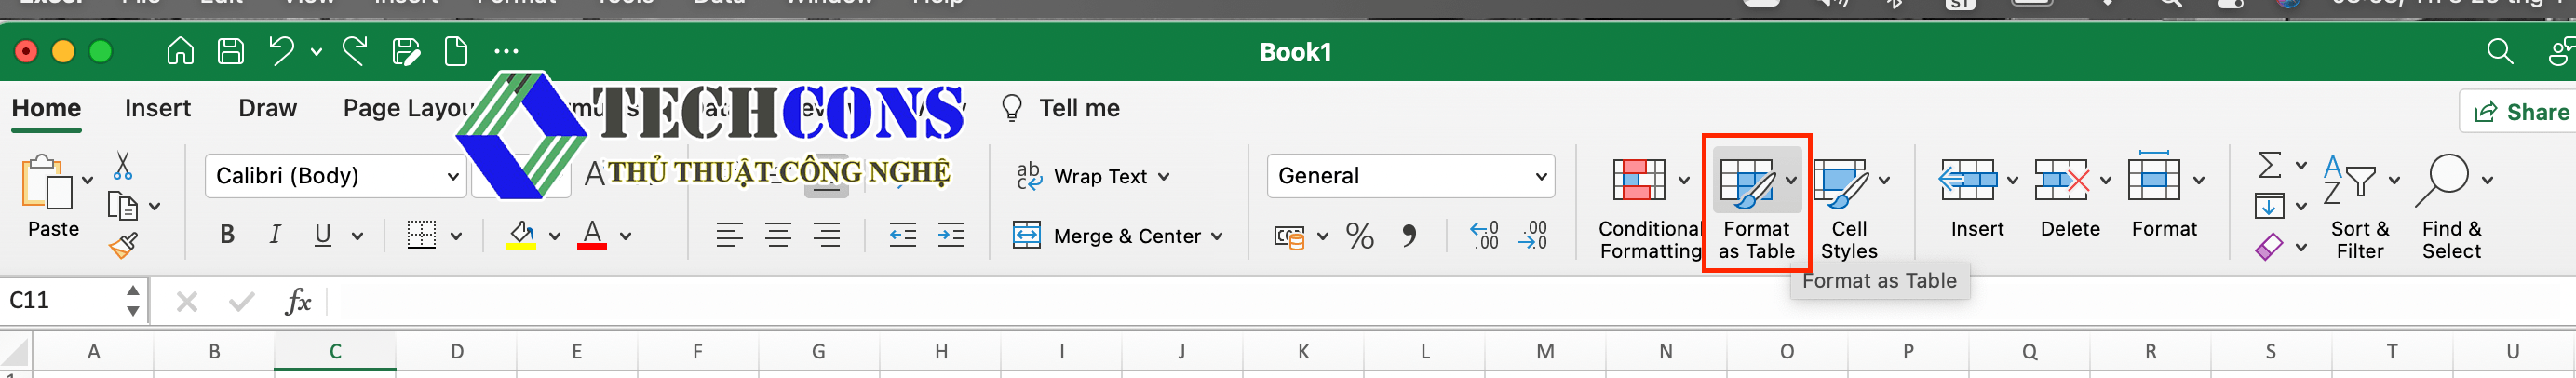 Cách Insert nhiều dòng trong Excel